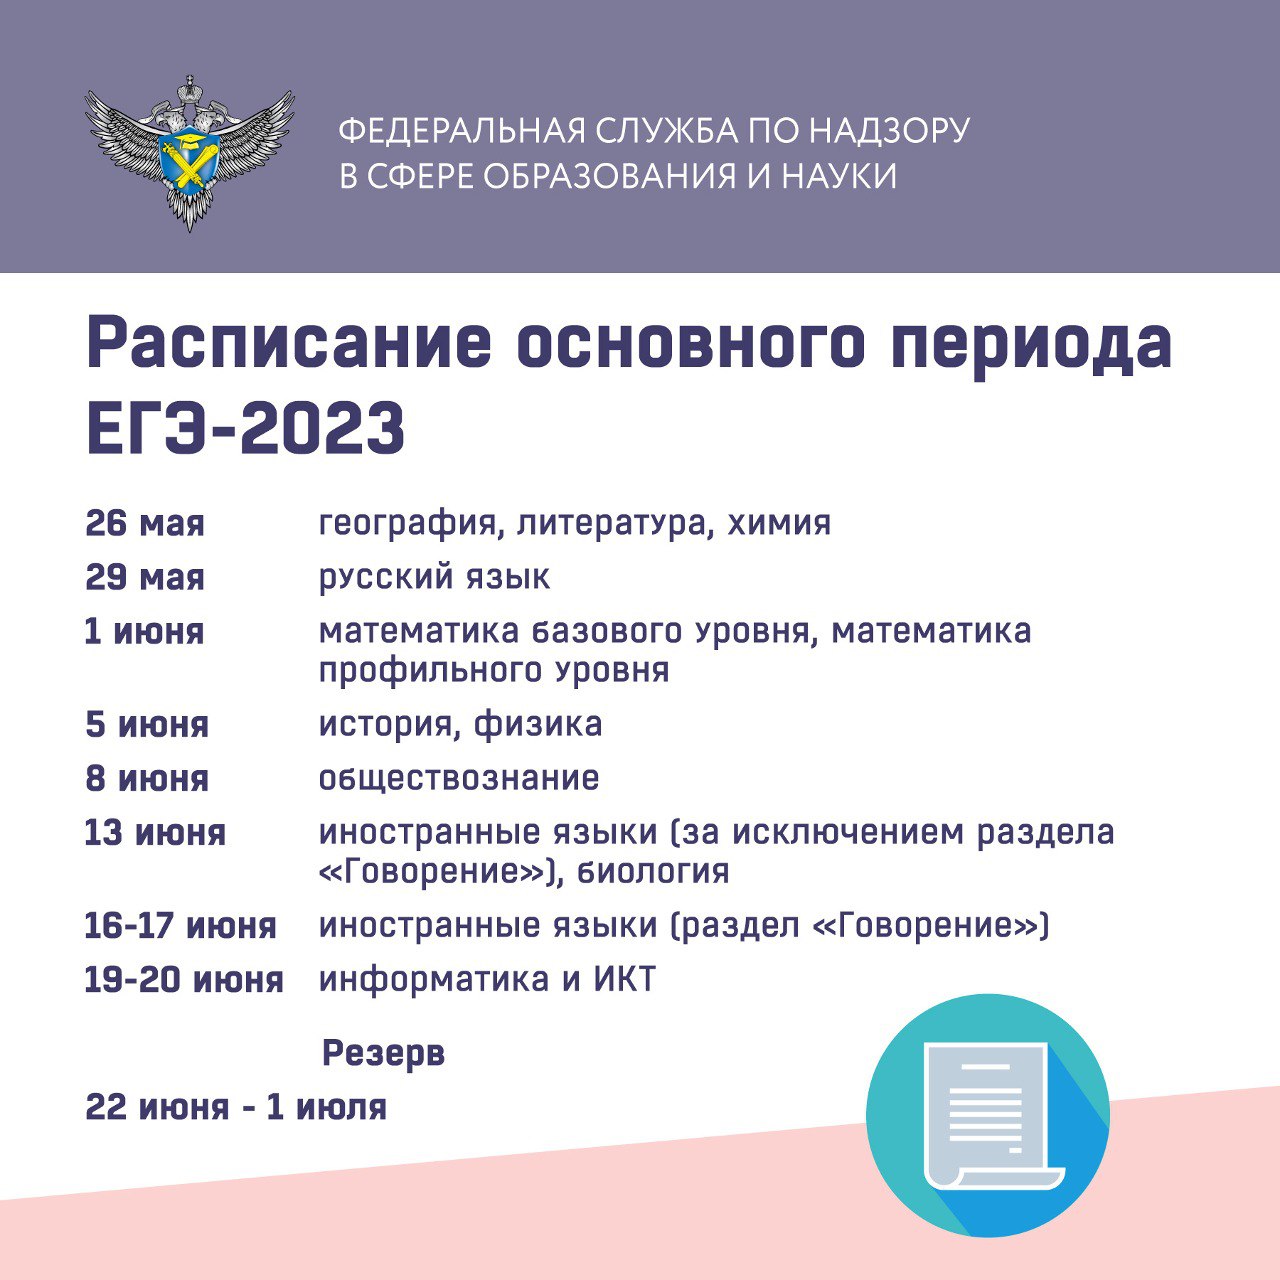 Расписание основного периода ЕГЭ-2023